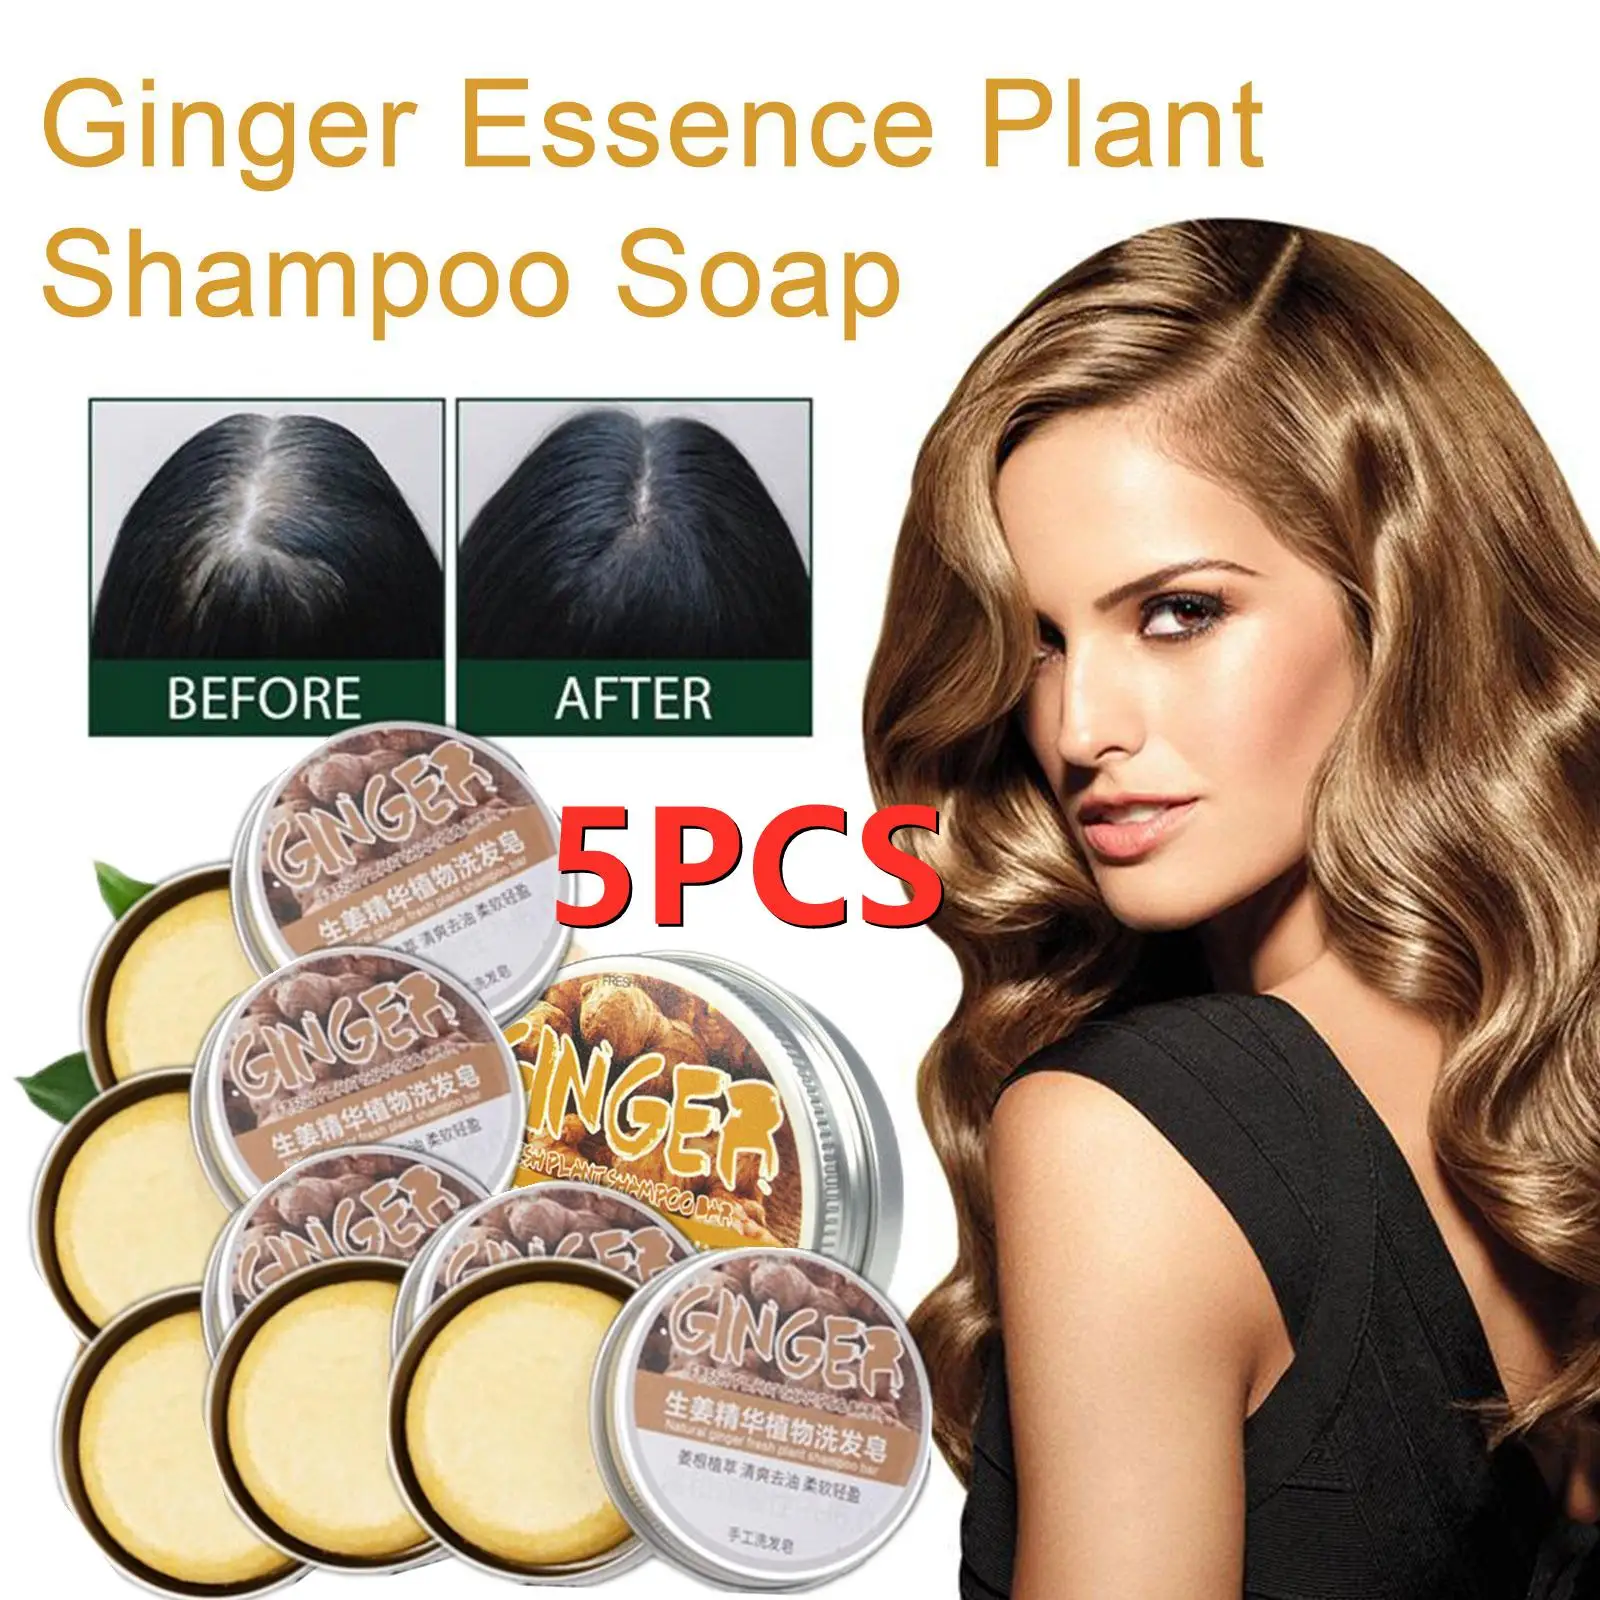 5PCS New Upgrade Ginger Hair Regrowth Shampoo Bar, Promotes Ginger Handmade Hair Shampoo Soap